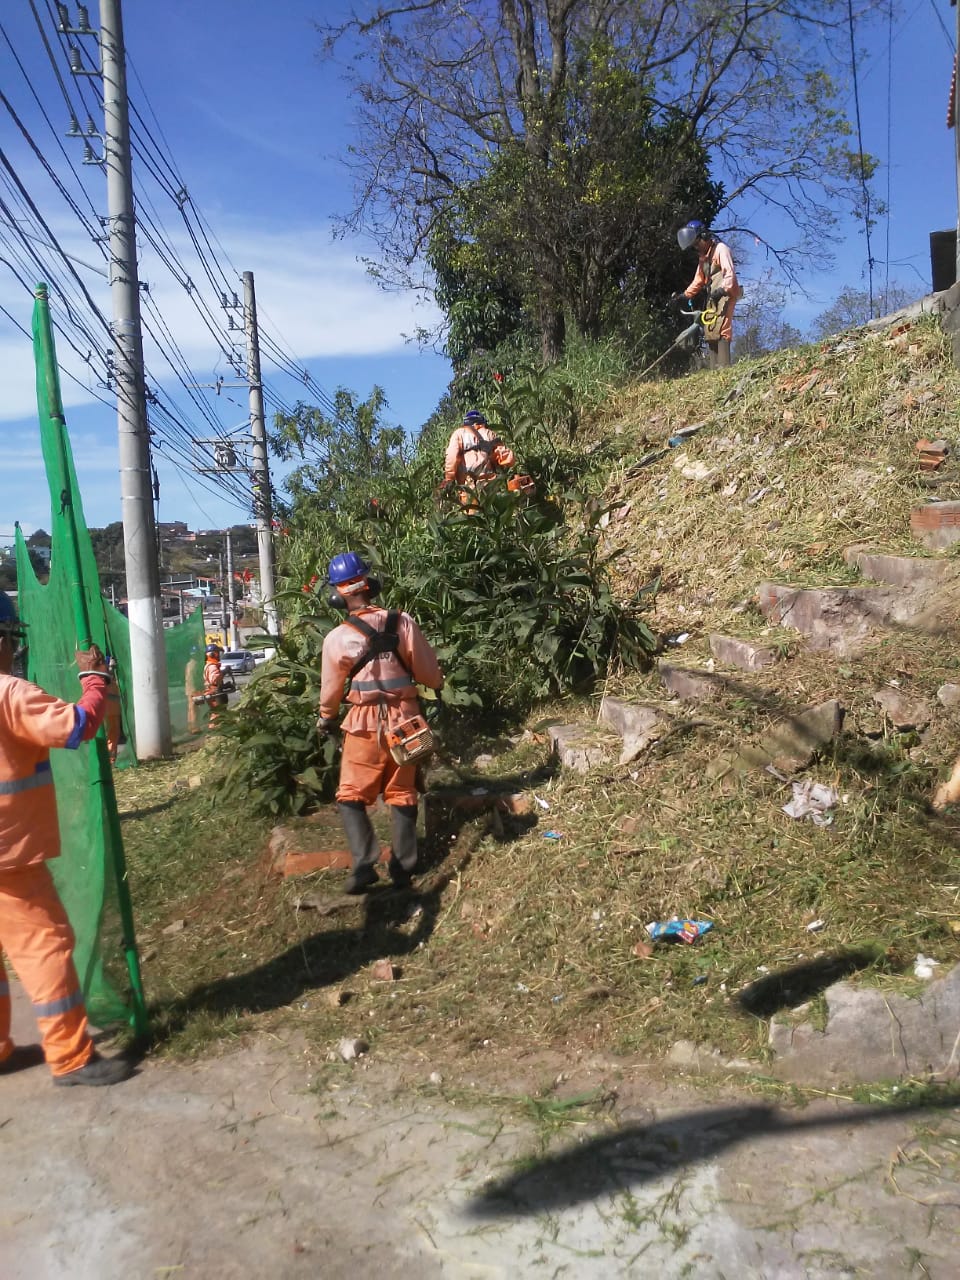 Quatros funcionários, vestidos com o uniforme da Prefeitura e munidos de equipamentos, como tela de proteção e roçadeira, realizando poda de grama num relevo inclinado.